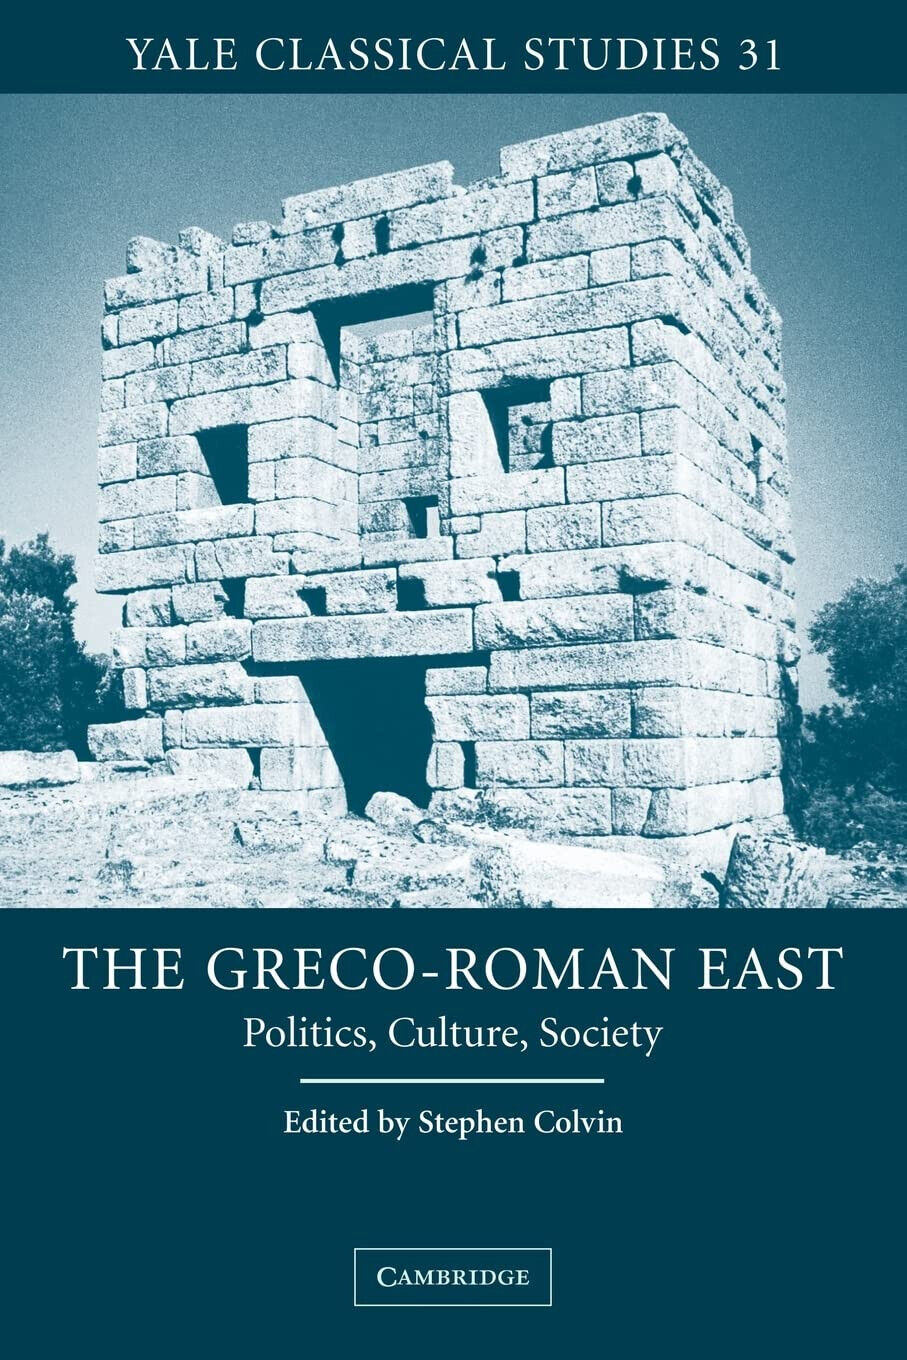 The Greco-Roman East - Stephen Colvin  - Cambridge, 2008